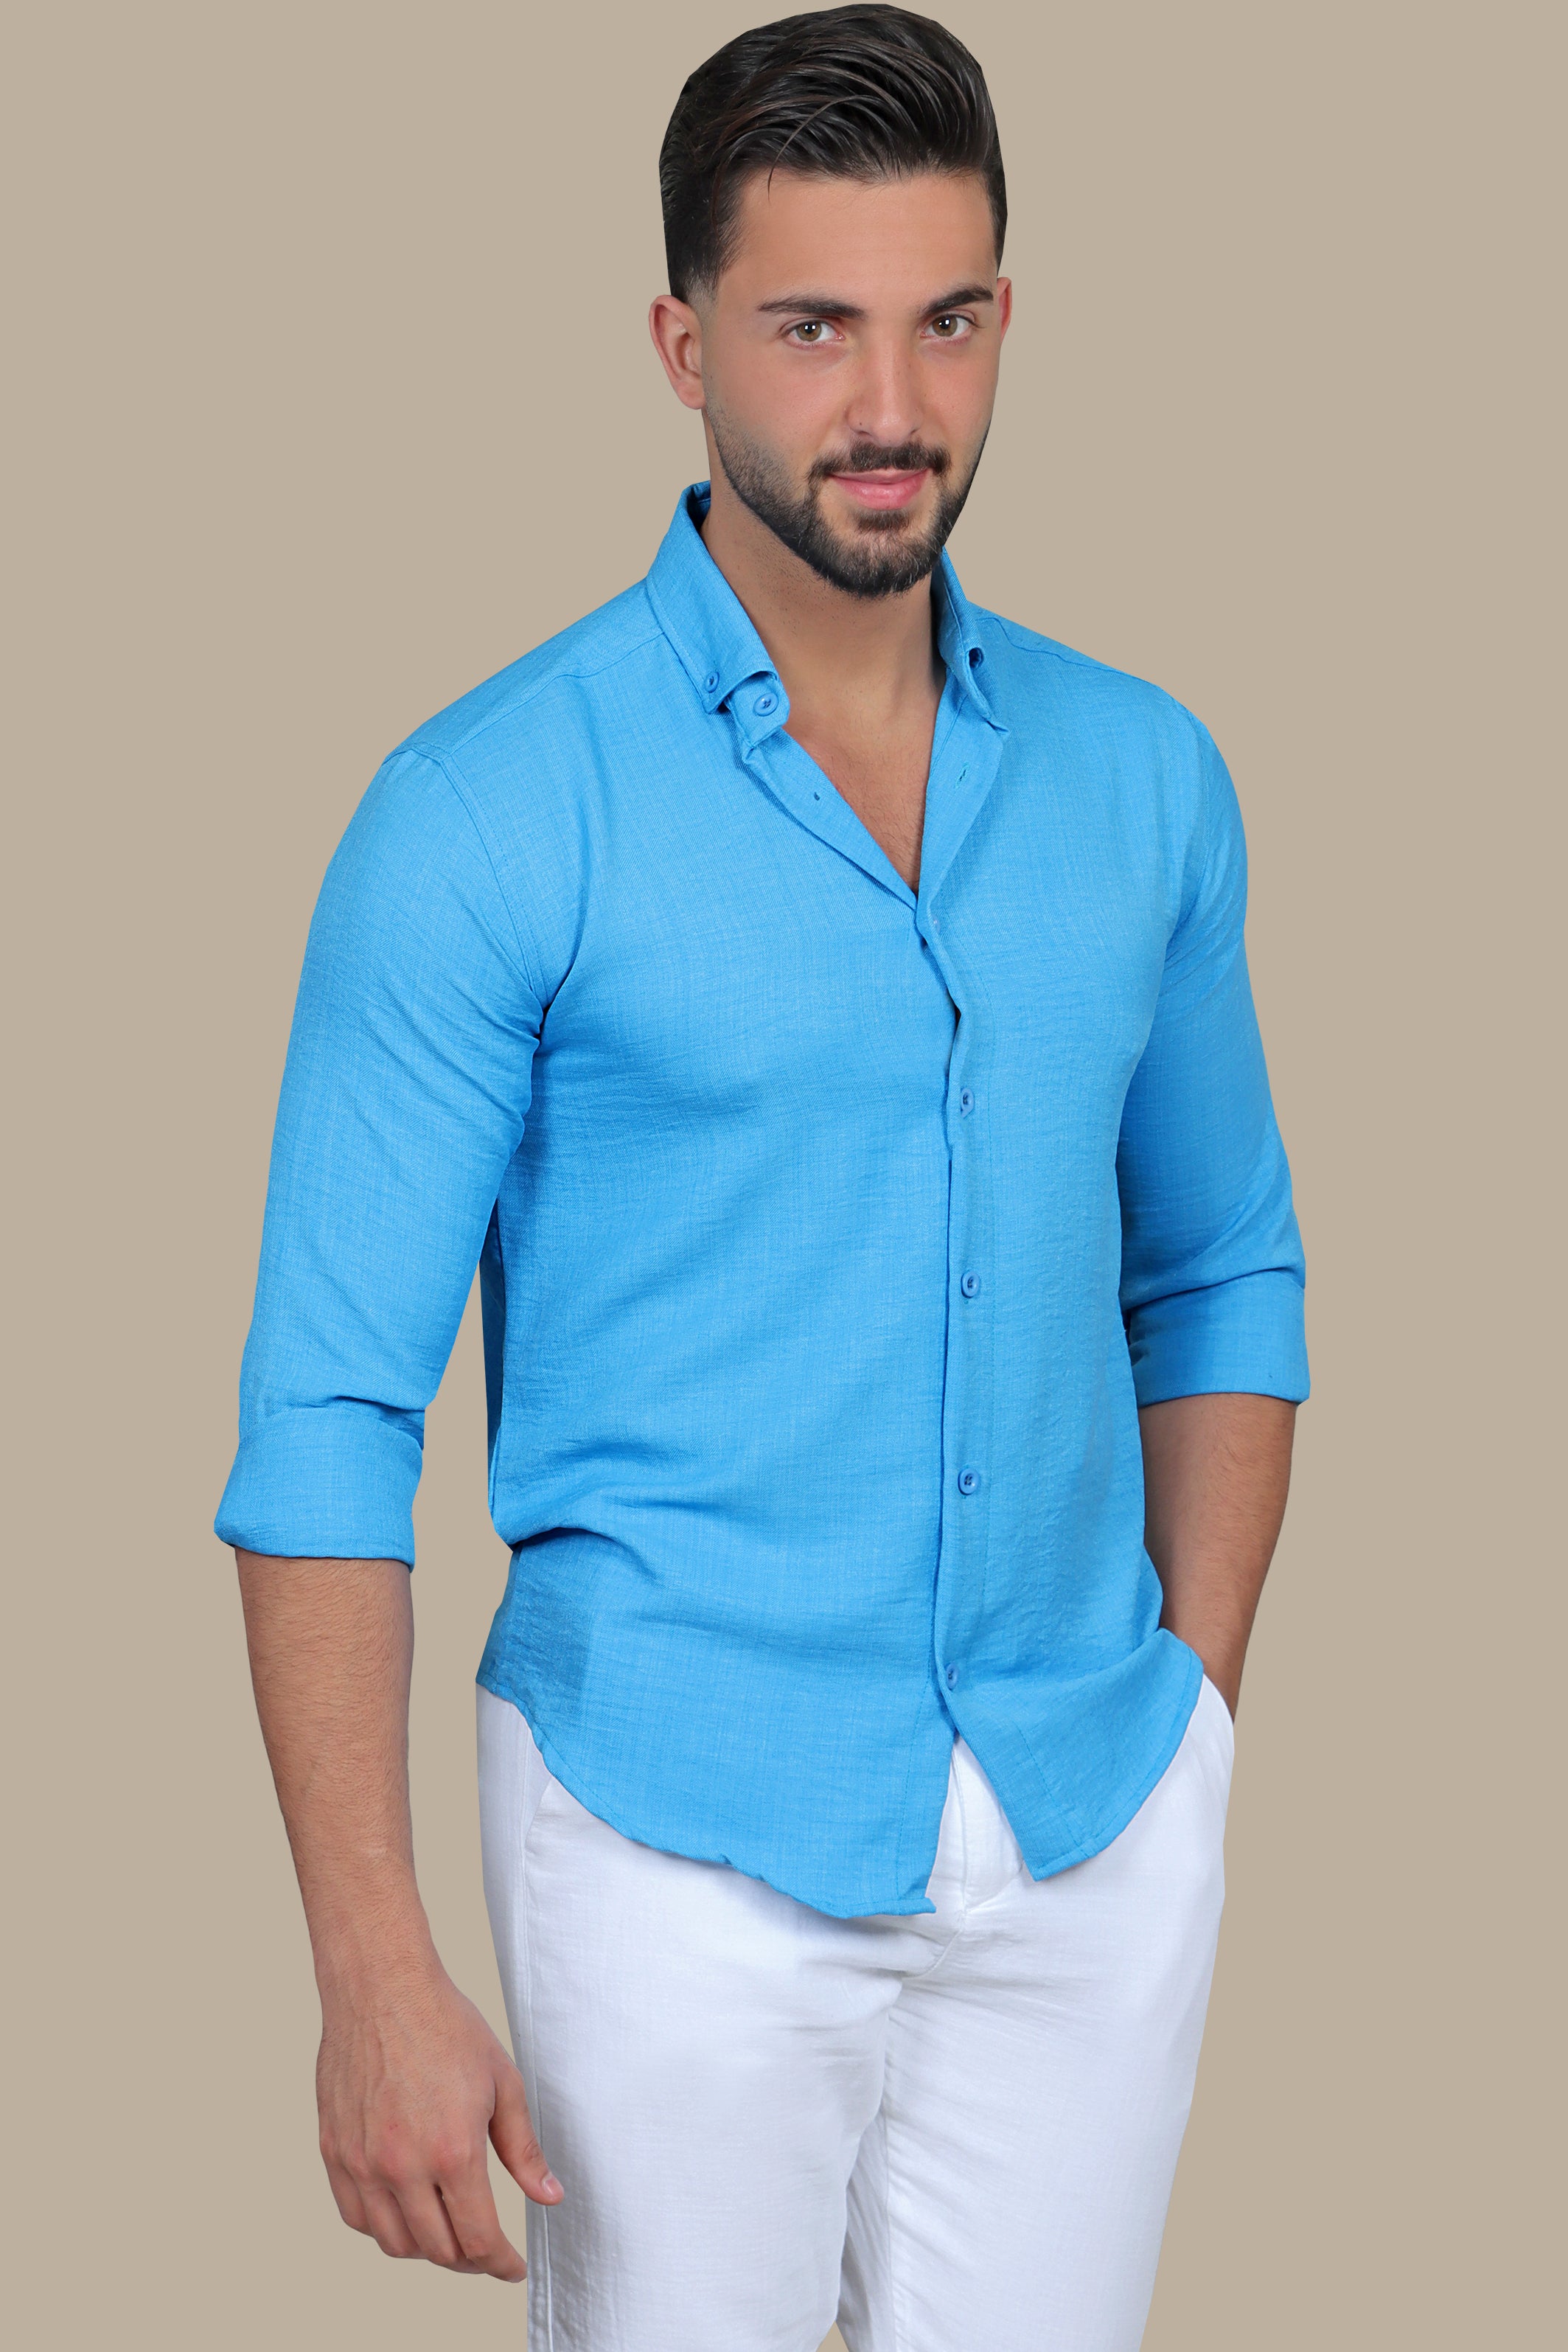 Classic Blue Linen Shirt: Long & Short Sleeve Options